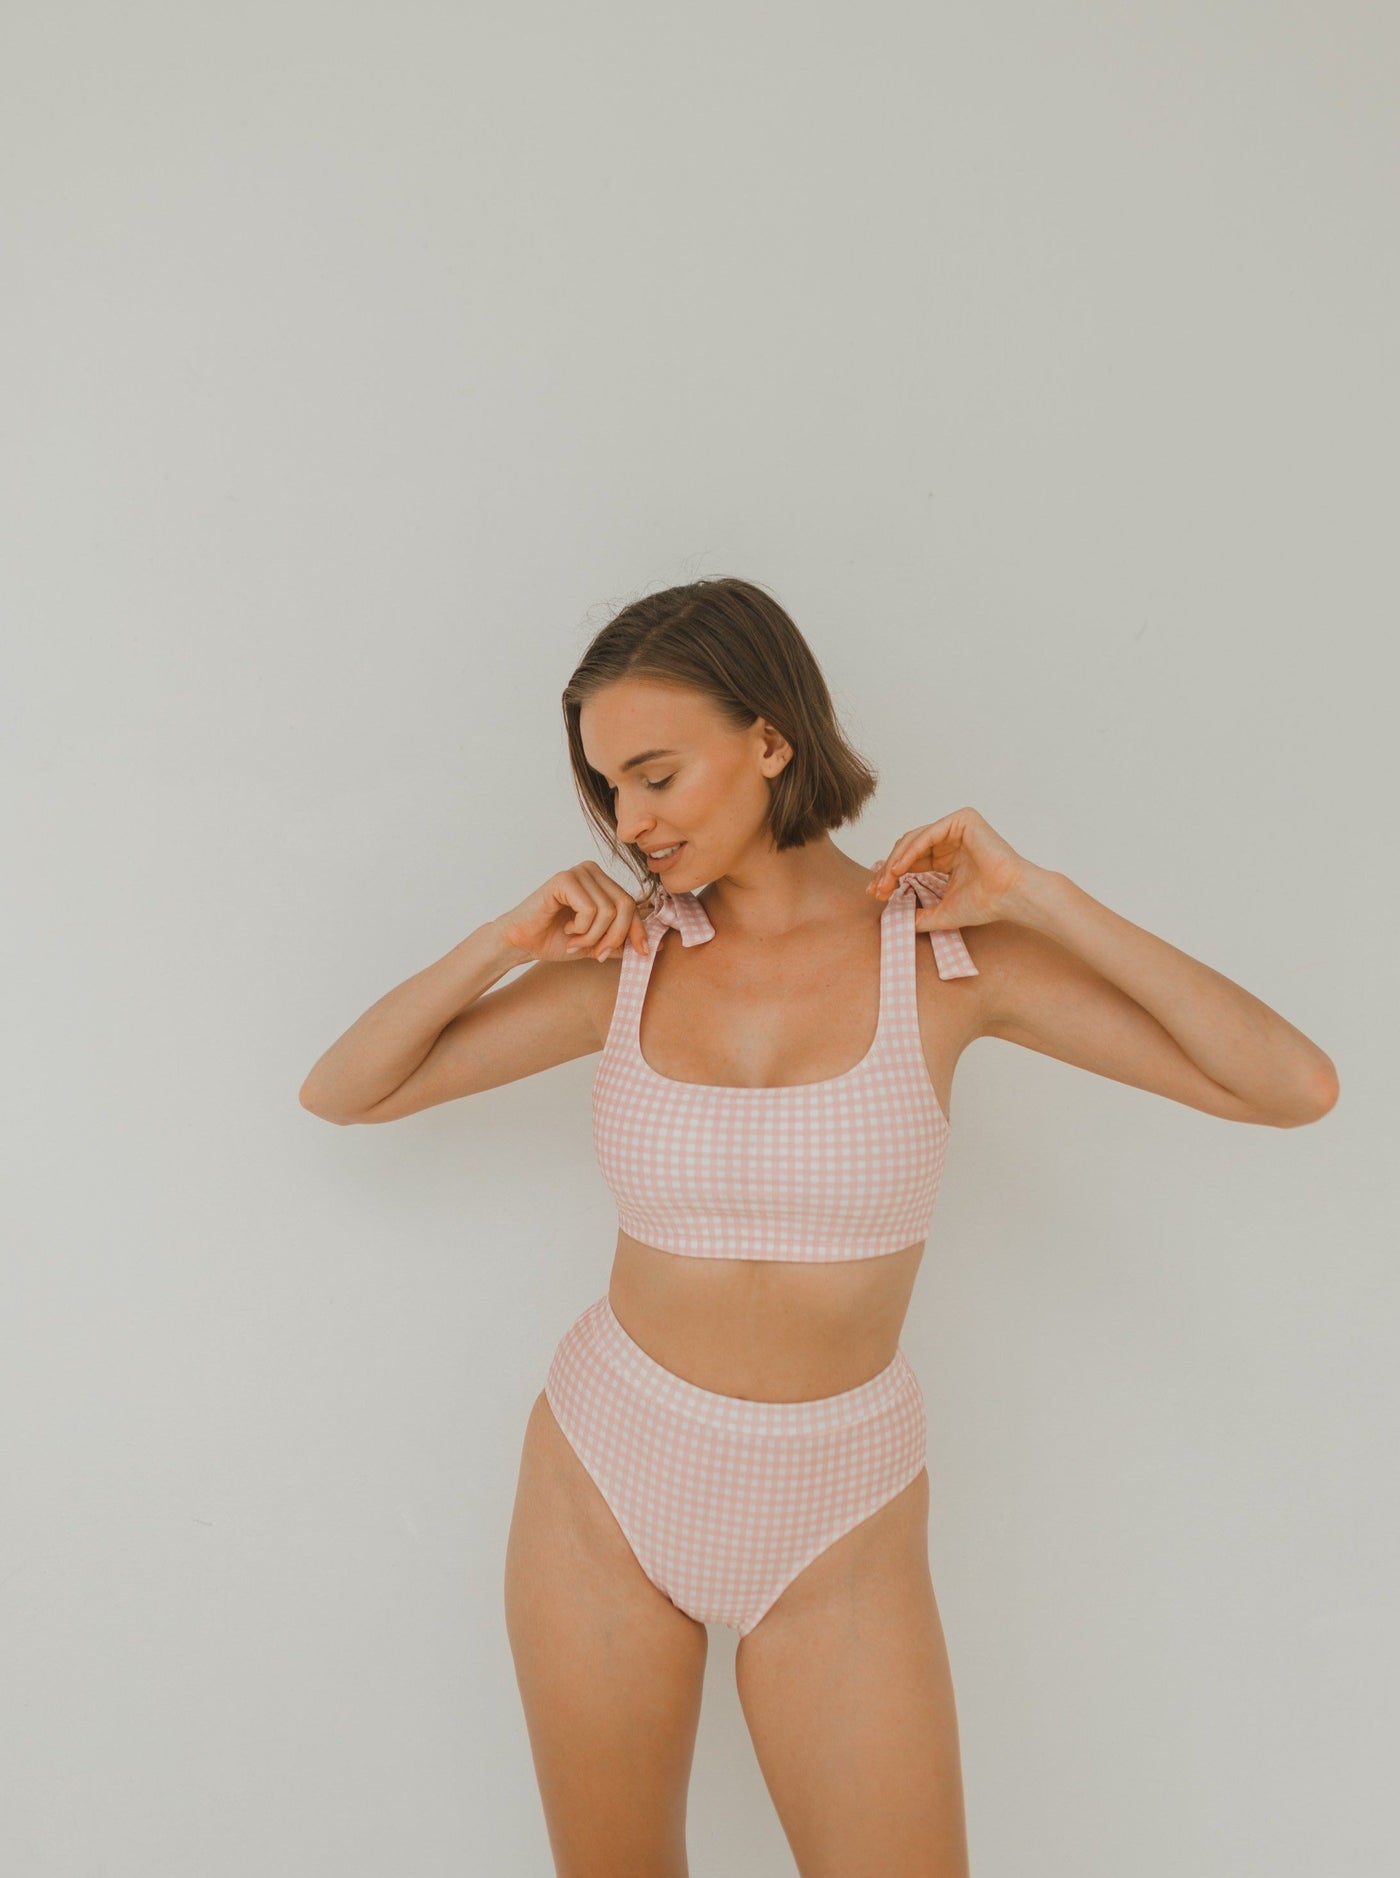 Woman two piece bikini swimwear in pink gingham prints